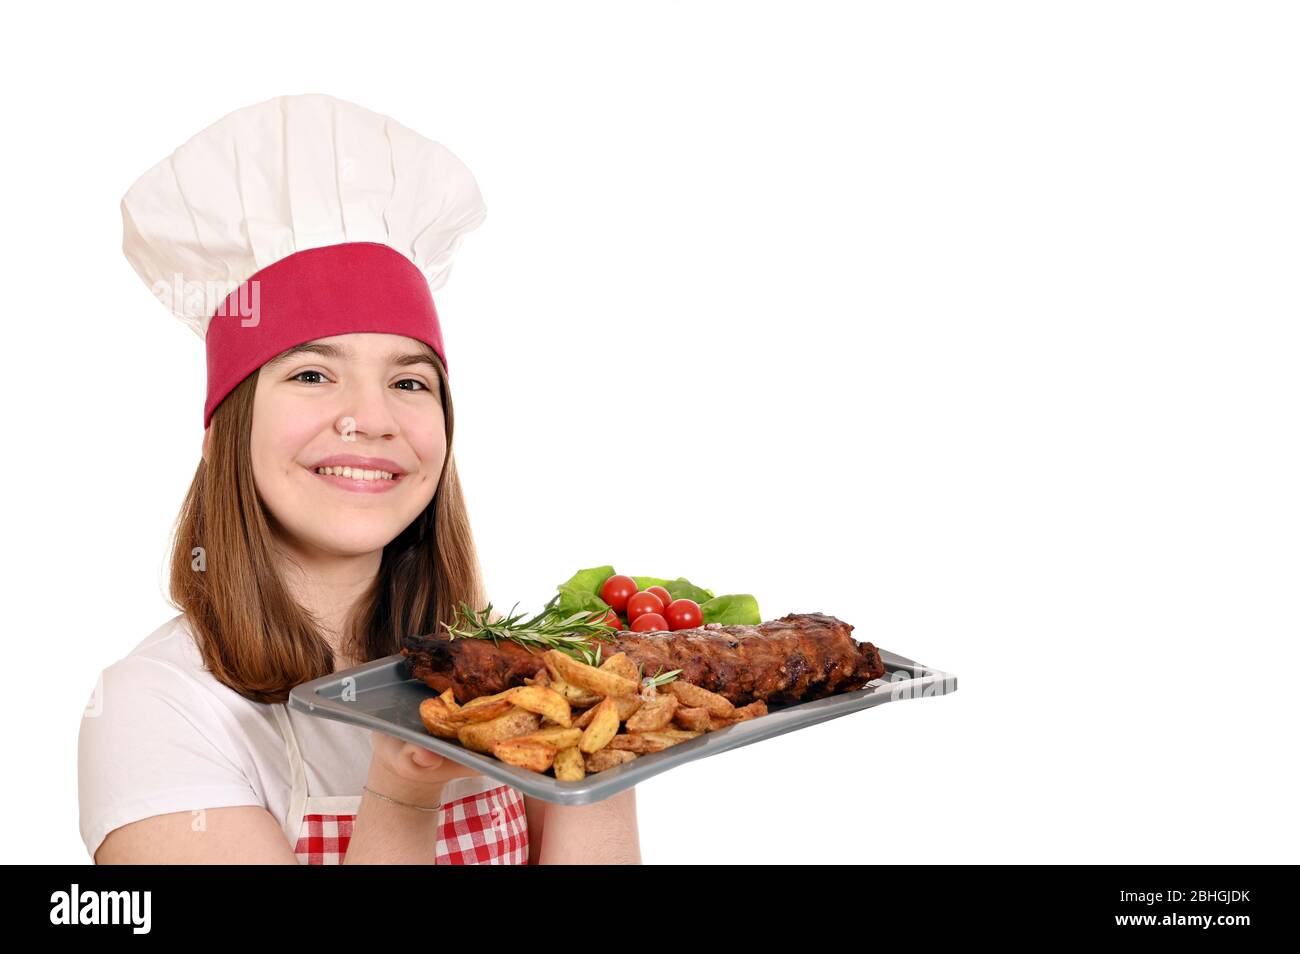 happy girl cuisinier avec des côtes de porc de rechange à la plaque Banque D'Images